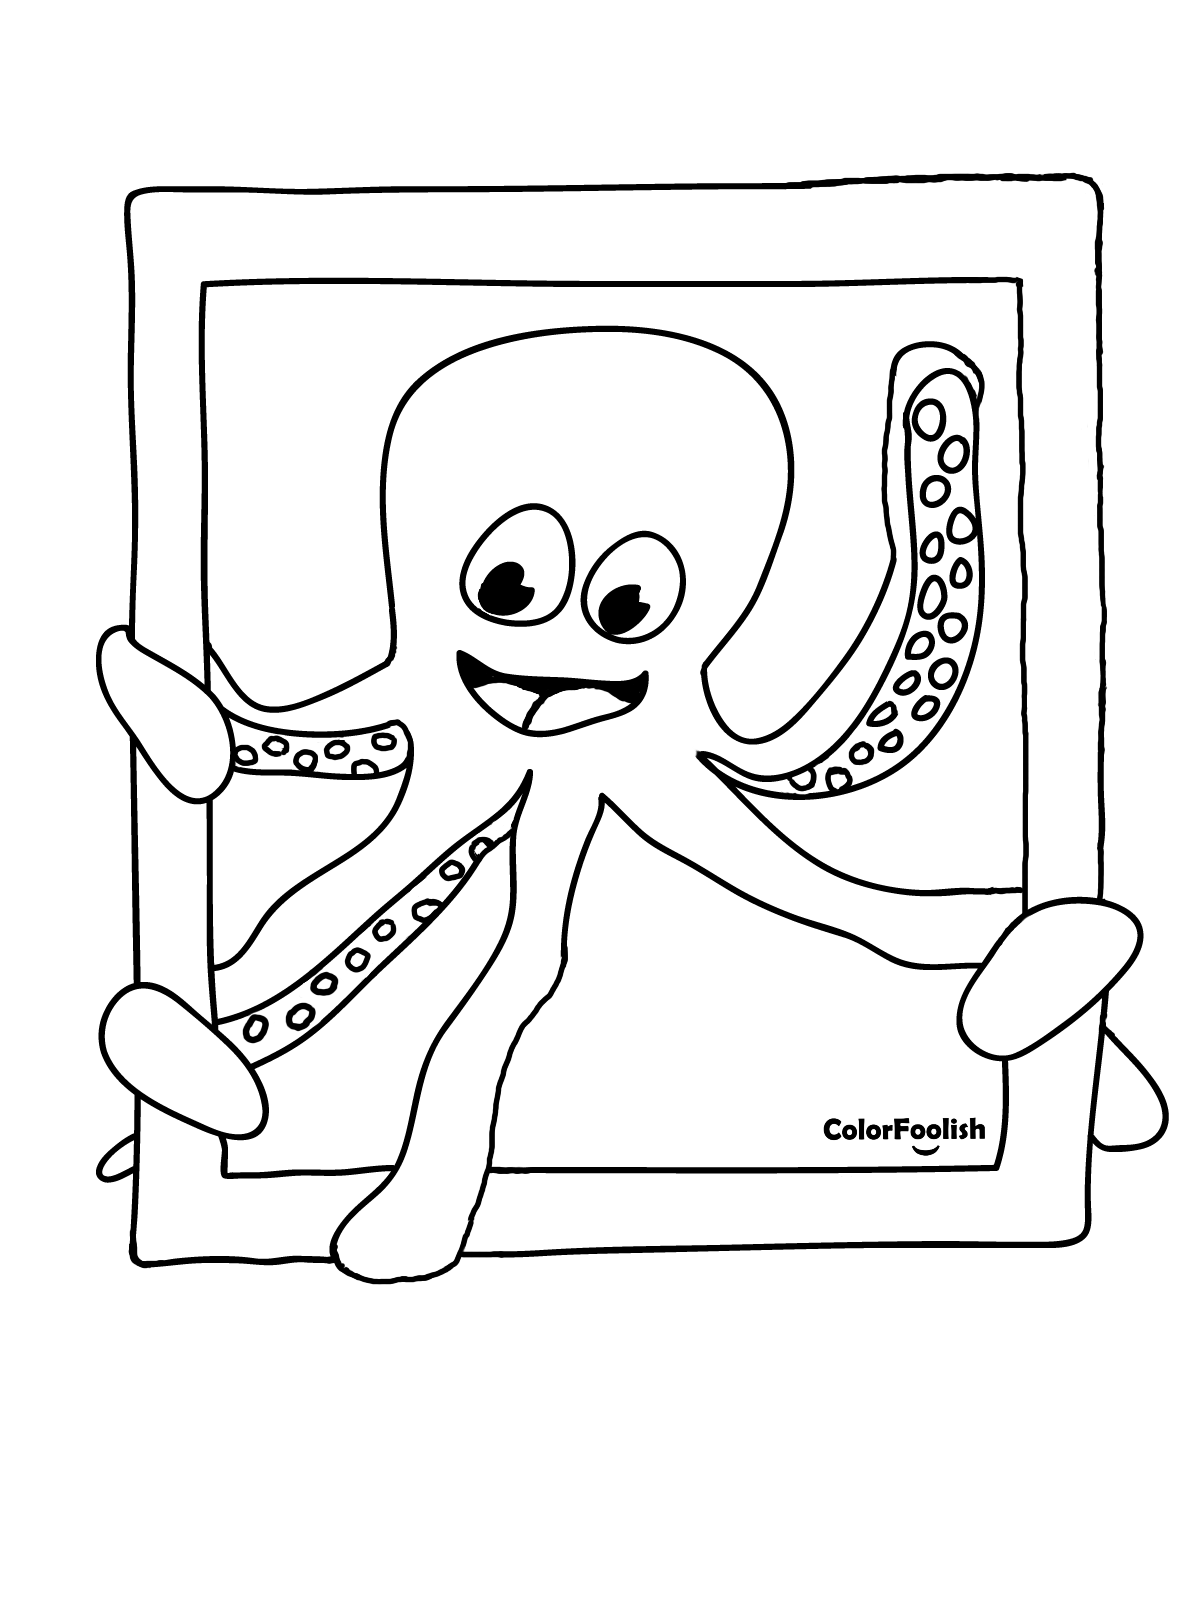 Farvelægning af en blæksprutte, der vinker i en ramme